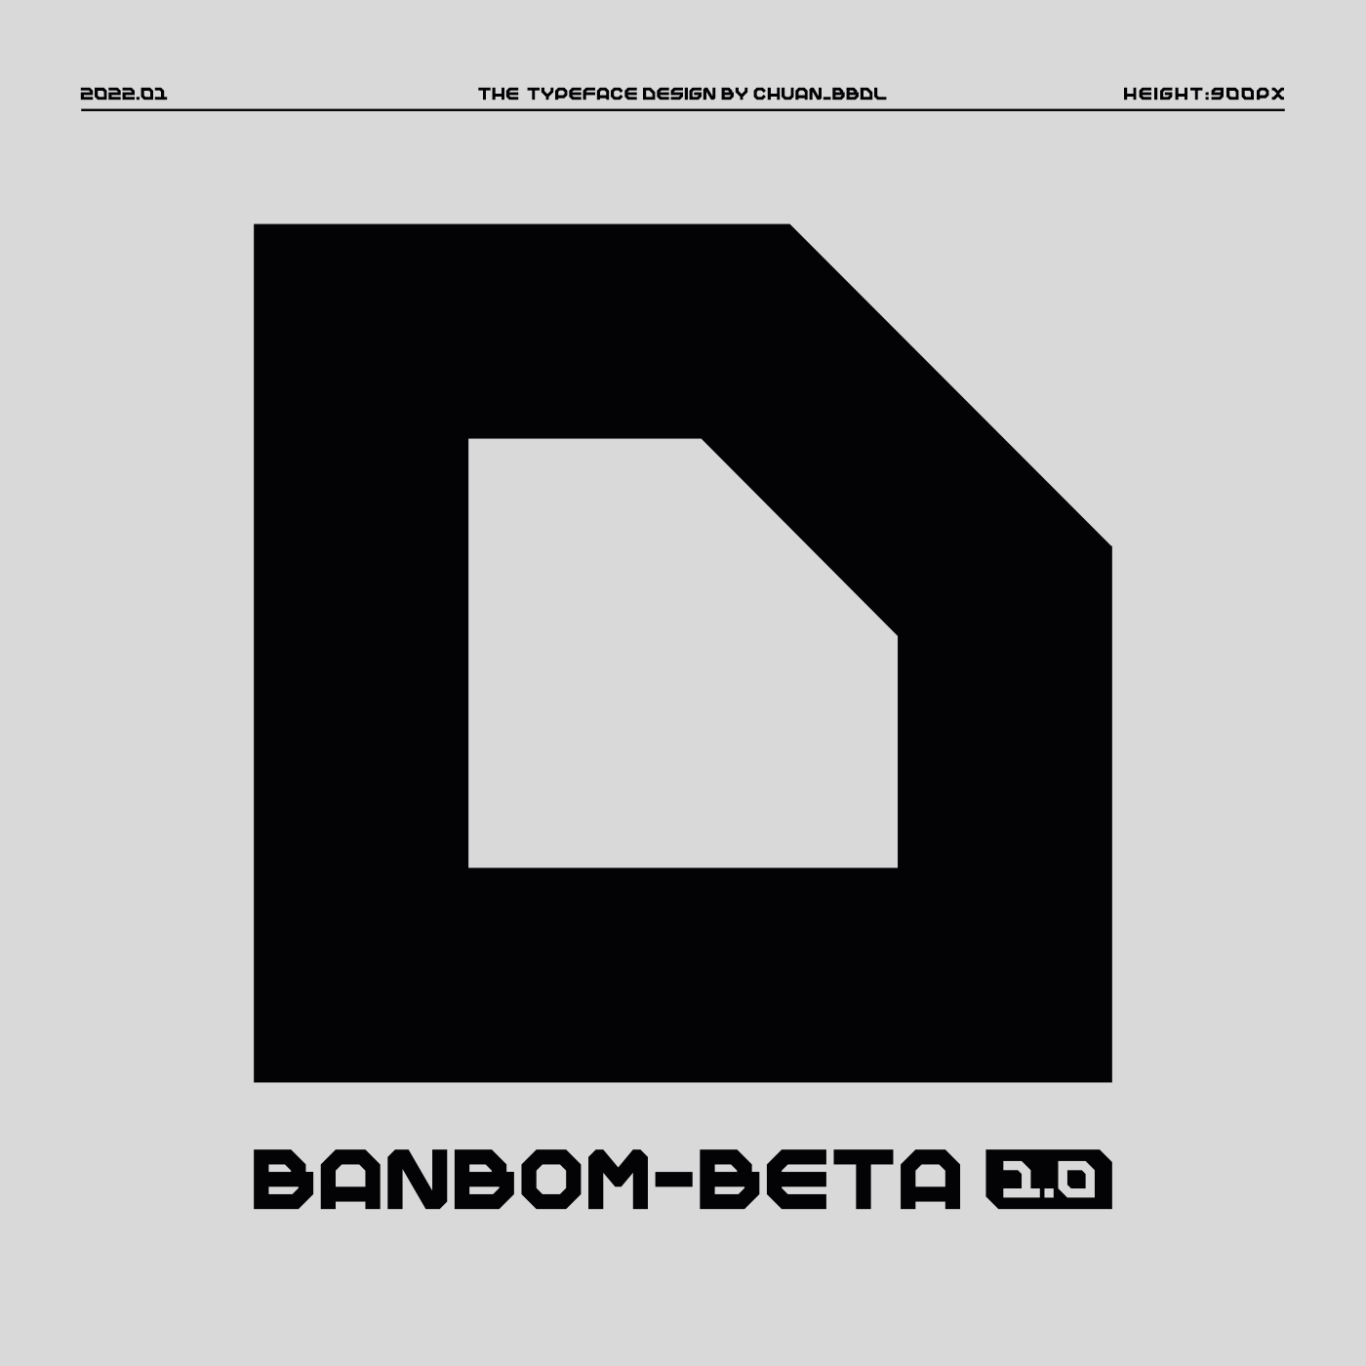 【字体】Banbom-Beta1.0英文字体设计图9